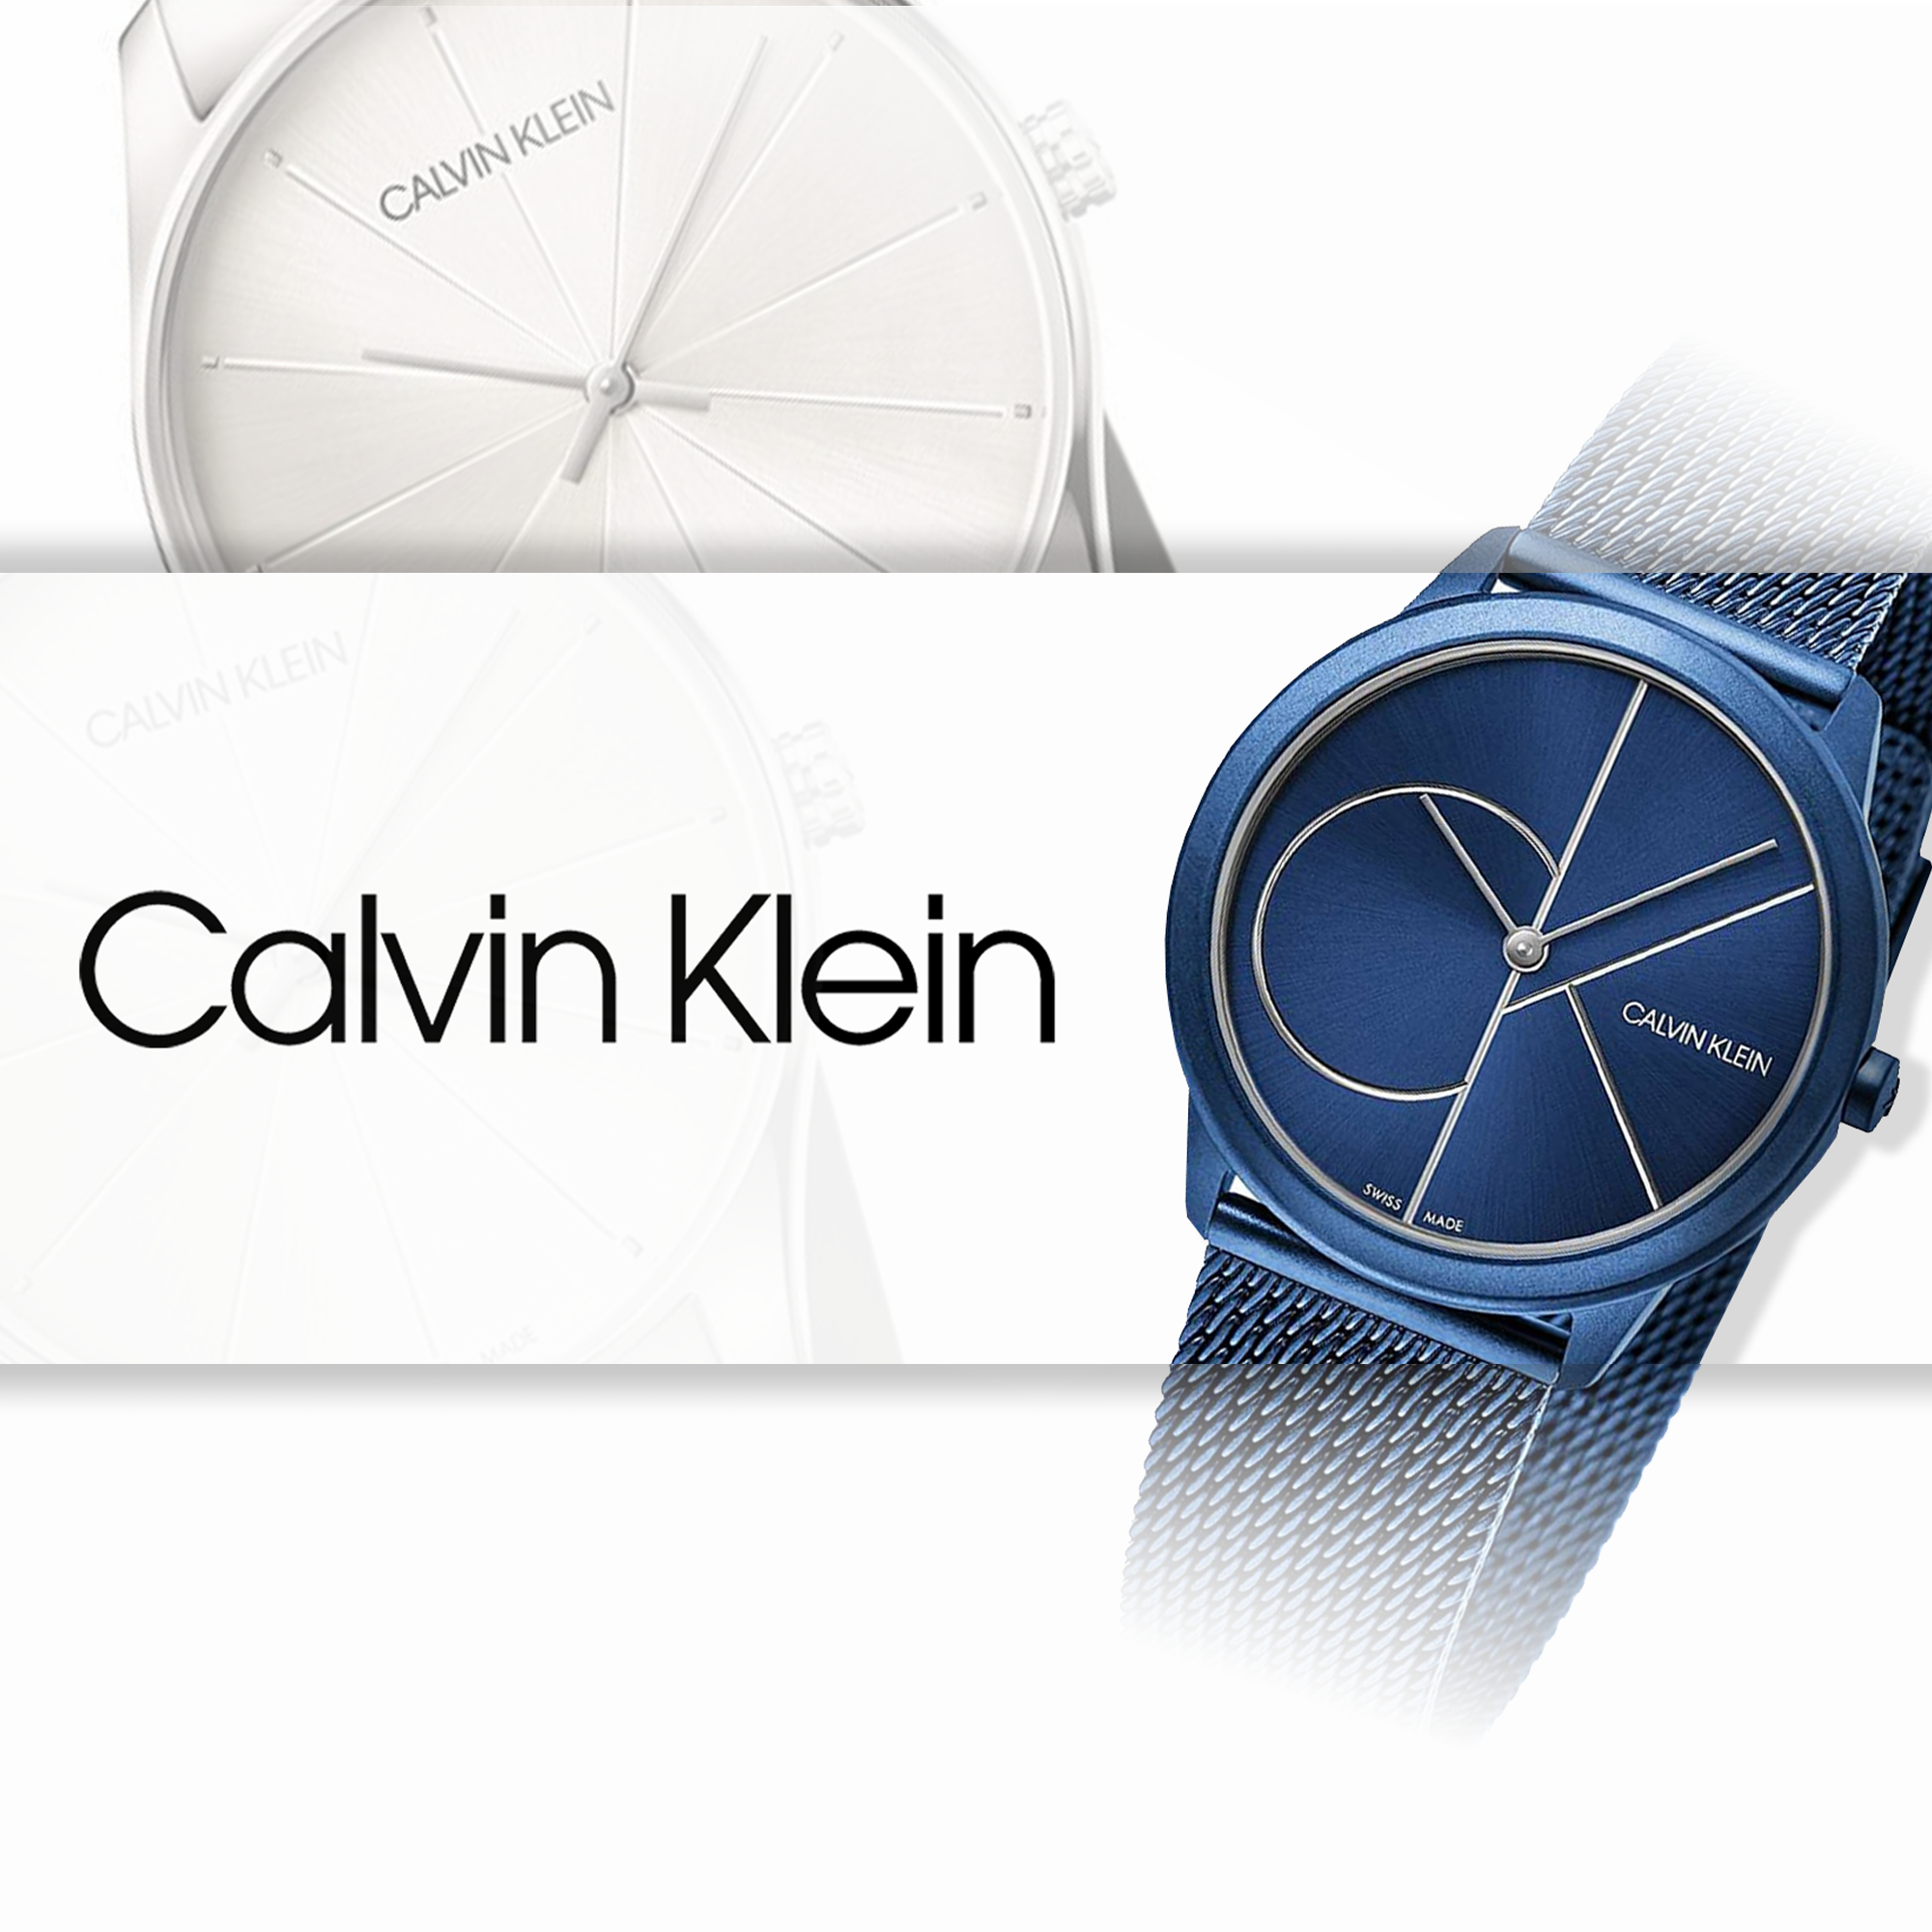 Calvin Klein Watches for Men & Women | CK Watches | Watches & Crystals